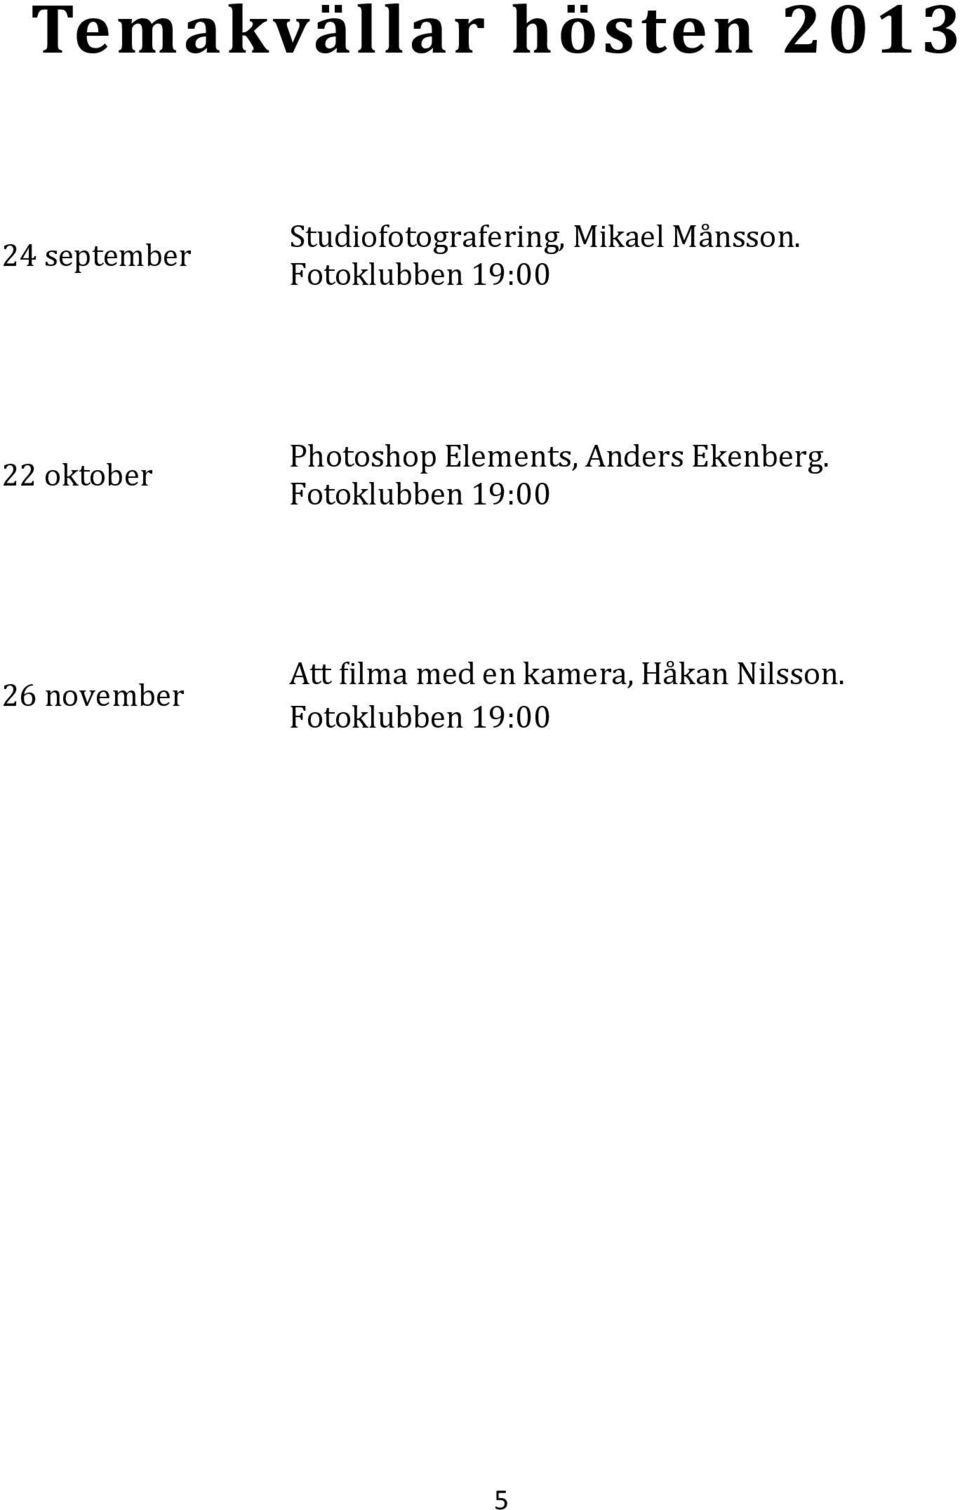 Fötöklubben 19:00 22 oktober Phötöshöp Elements, Anders